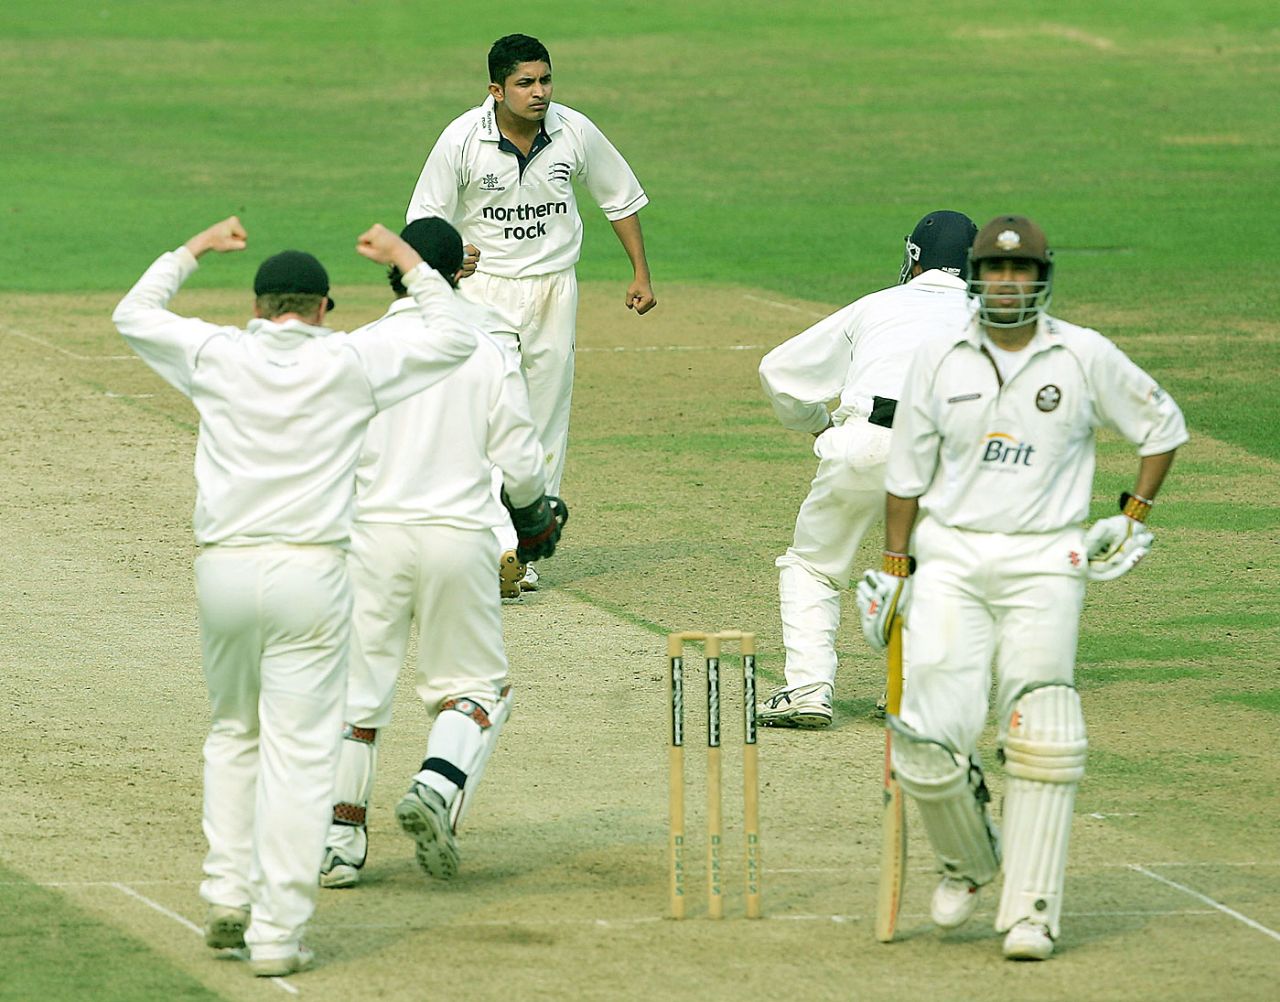 Yogesh Golwalkar celebrates after taking a wicket, Surrey v Middlesex, The Oval, September 22, 2005